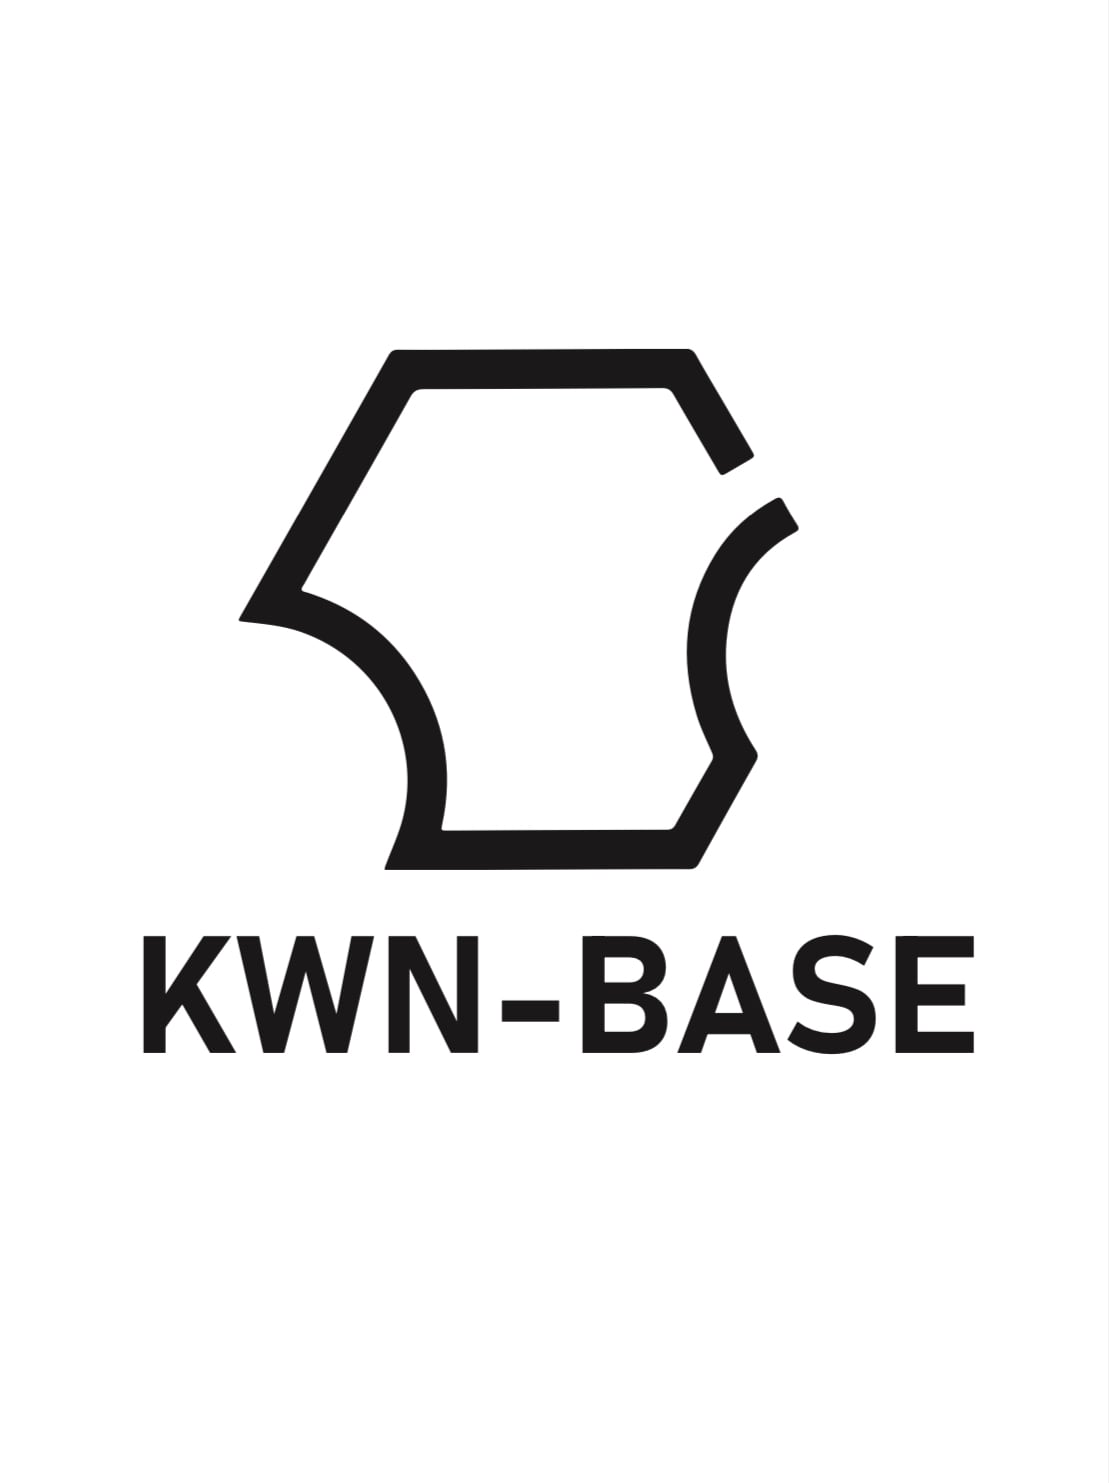 KWN-BASE